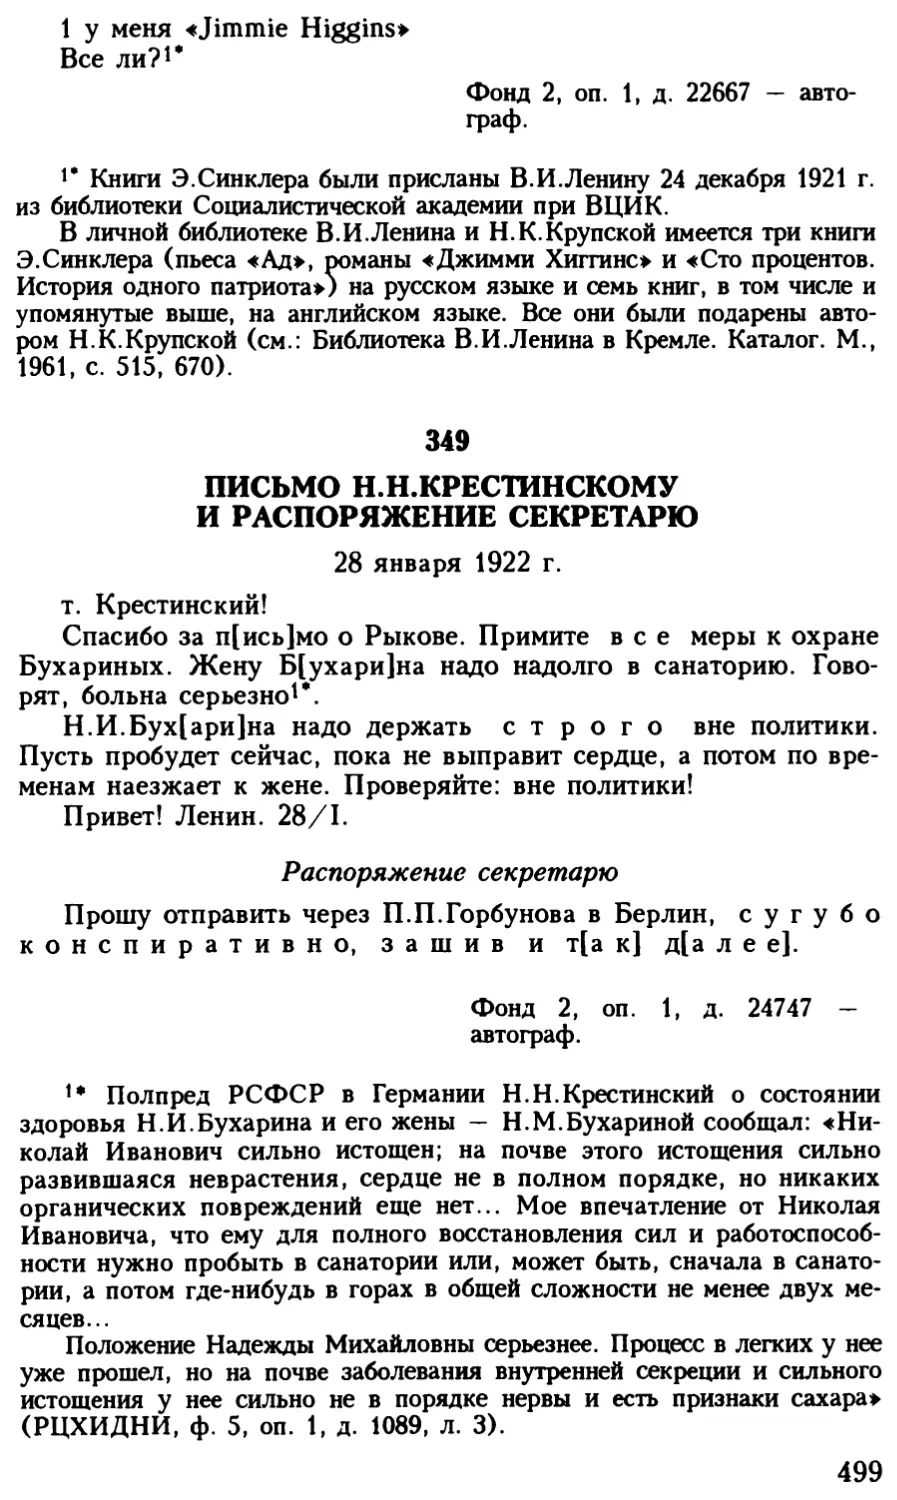 349. Письмо Н.Н.Крестинскому и распоряжение секретарю. 28 января 1922 г